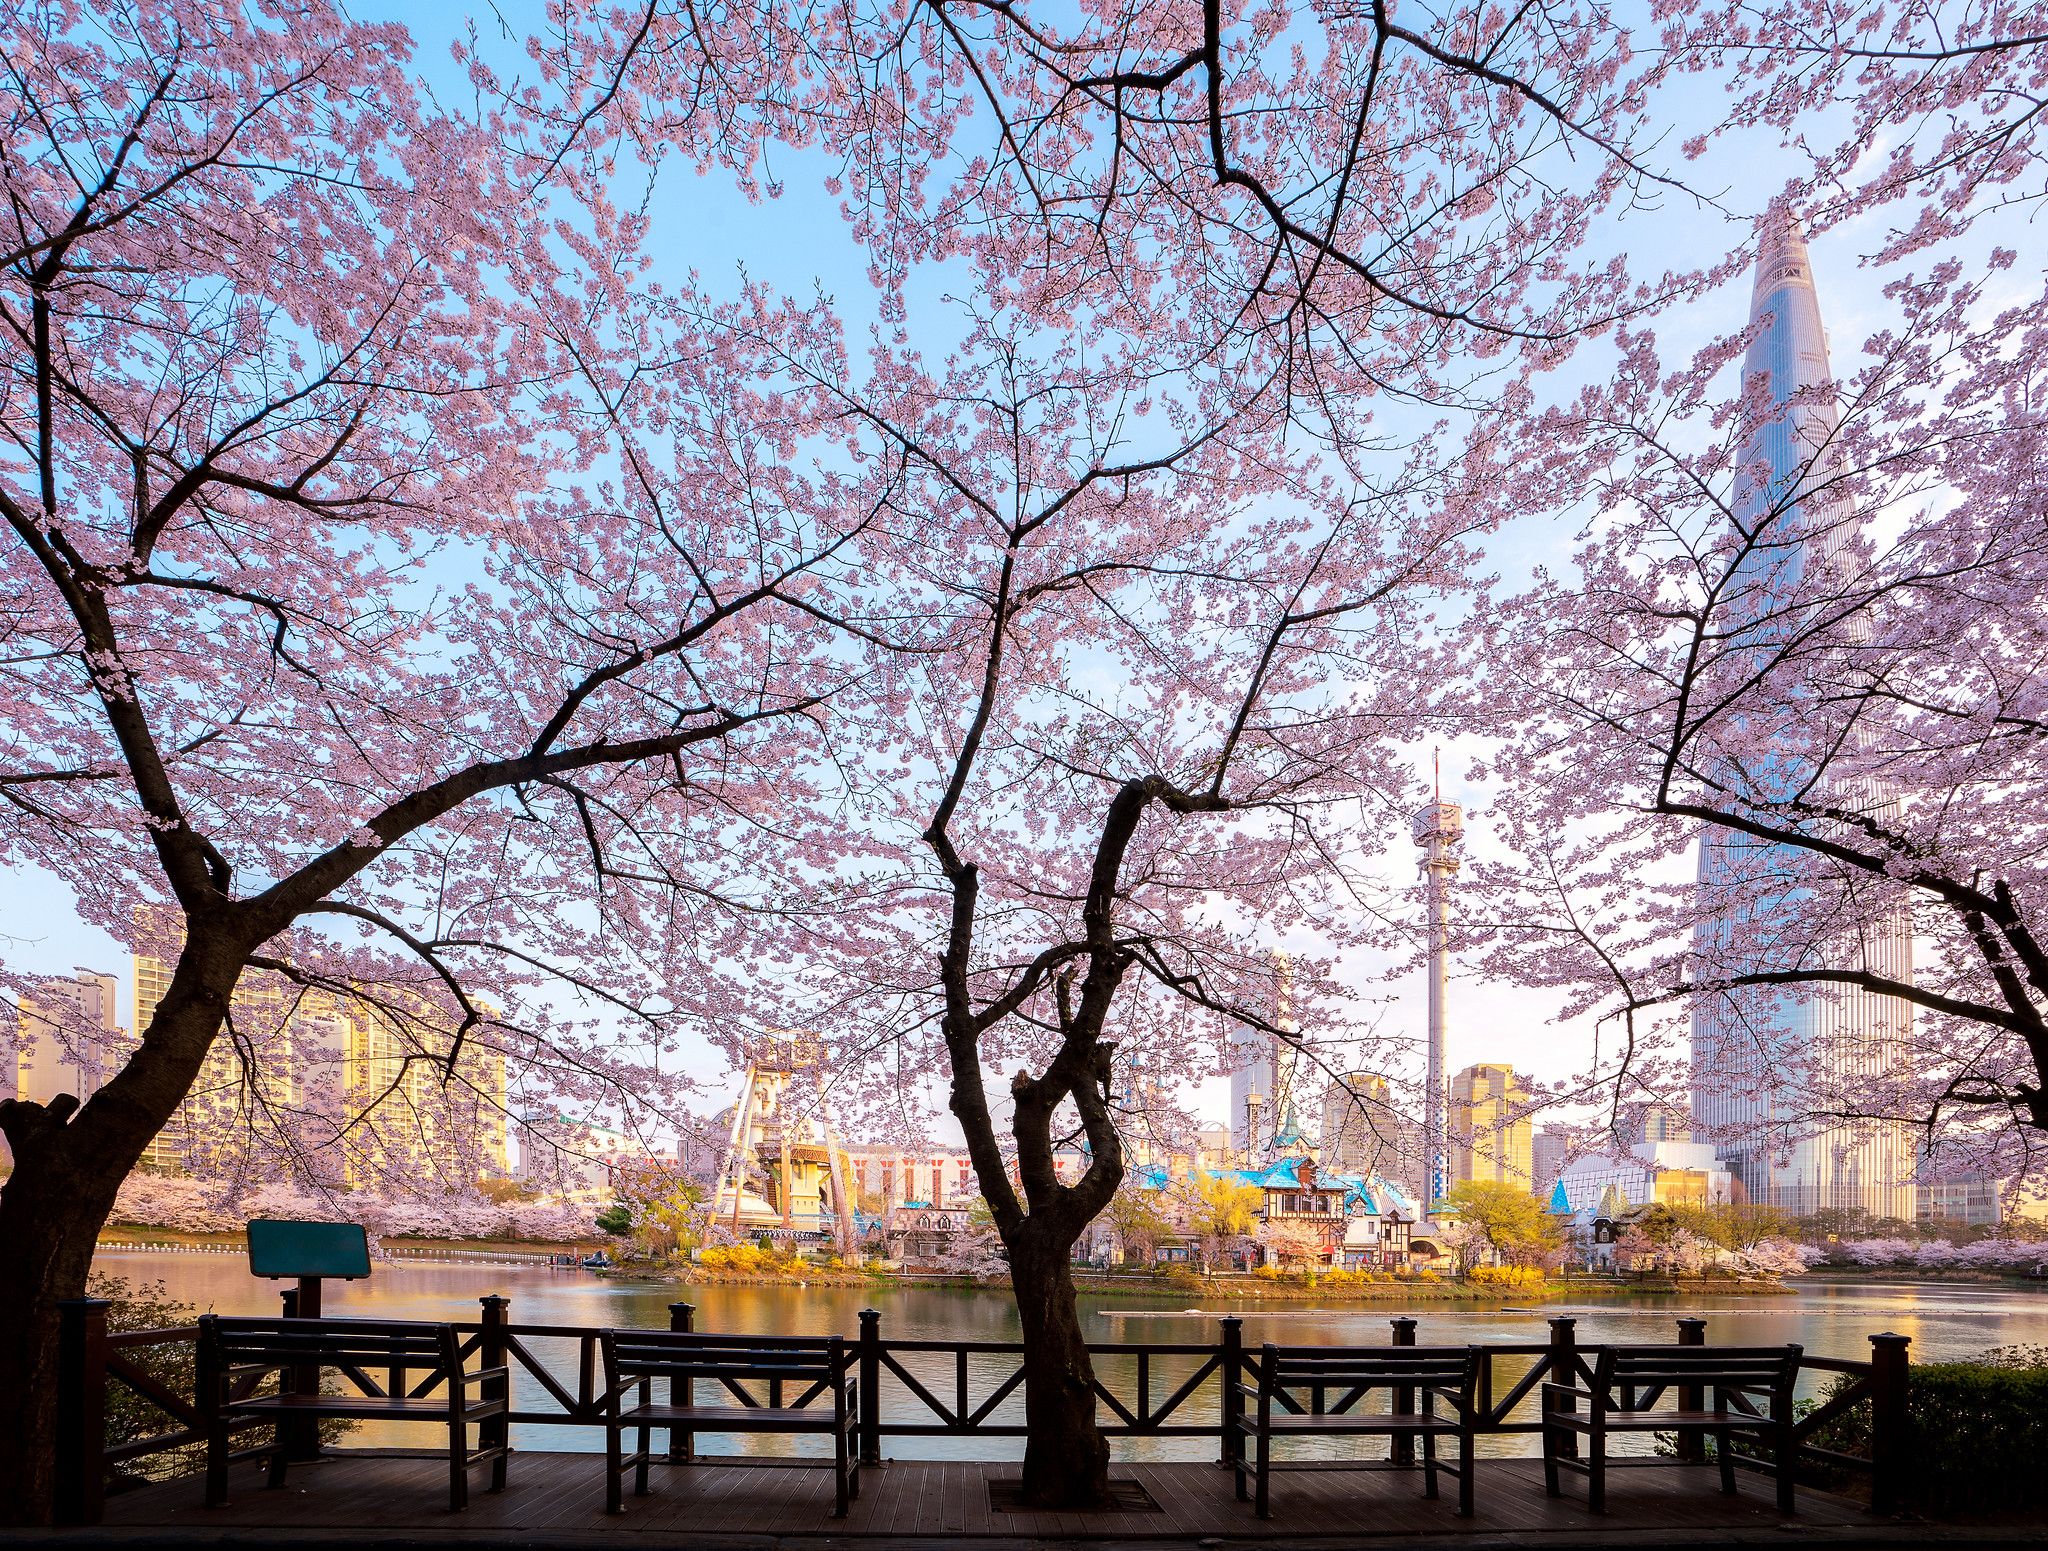 بحيرة سوكتشون تفتح أزهار الكرز في كوريا الجنوبية 2023